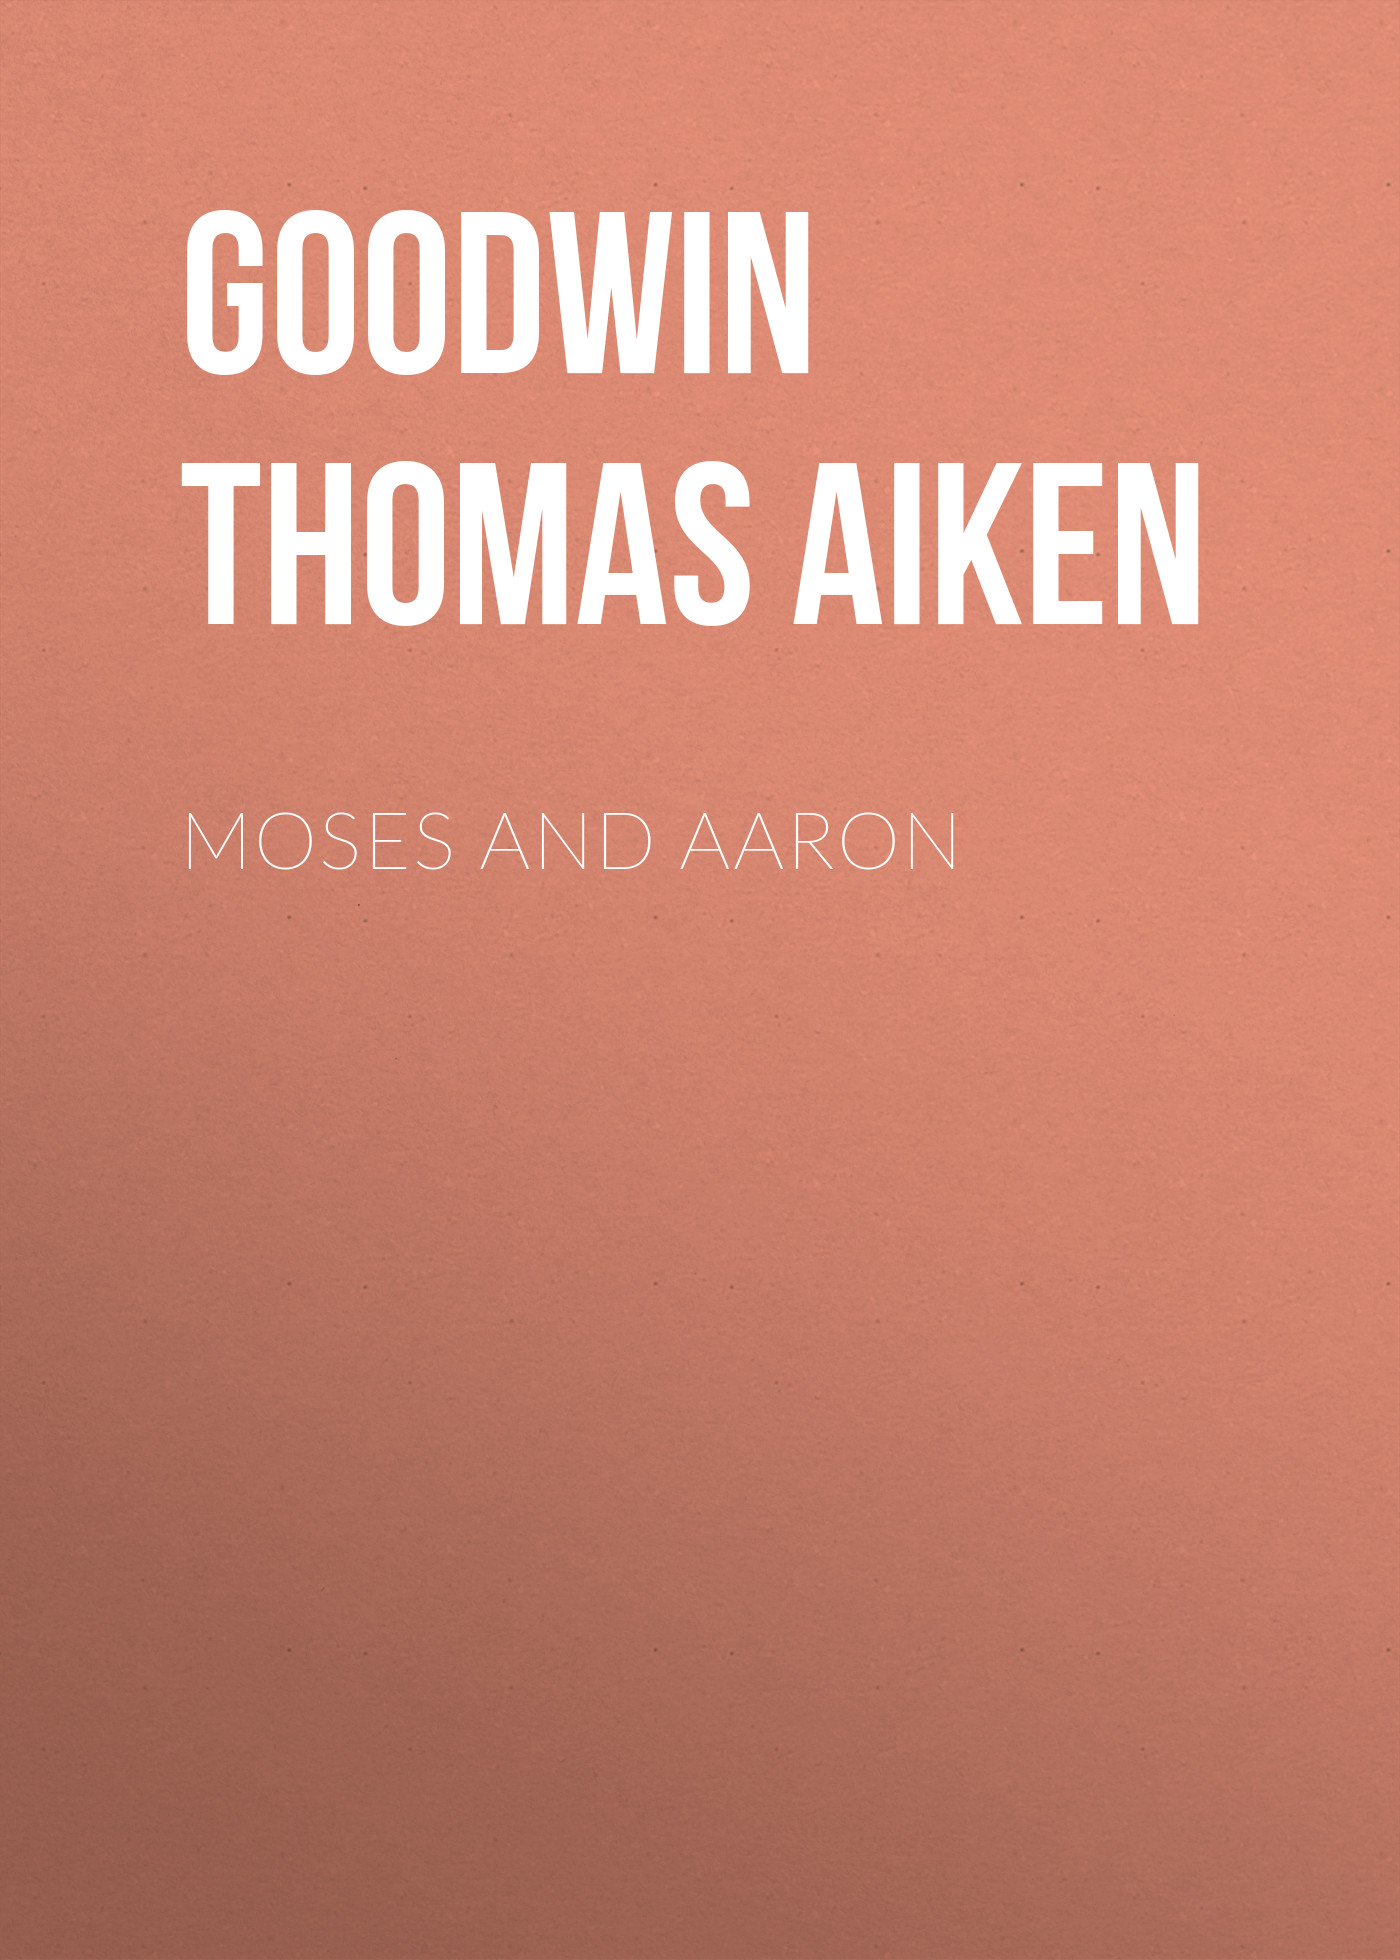 Goodwin Thomas Aiken Moses and Aaron